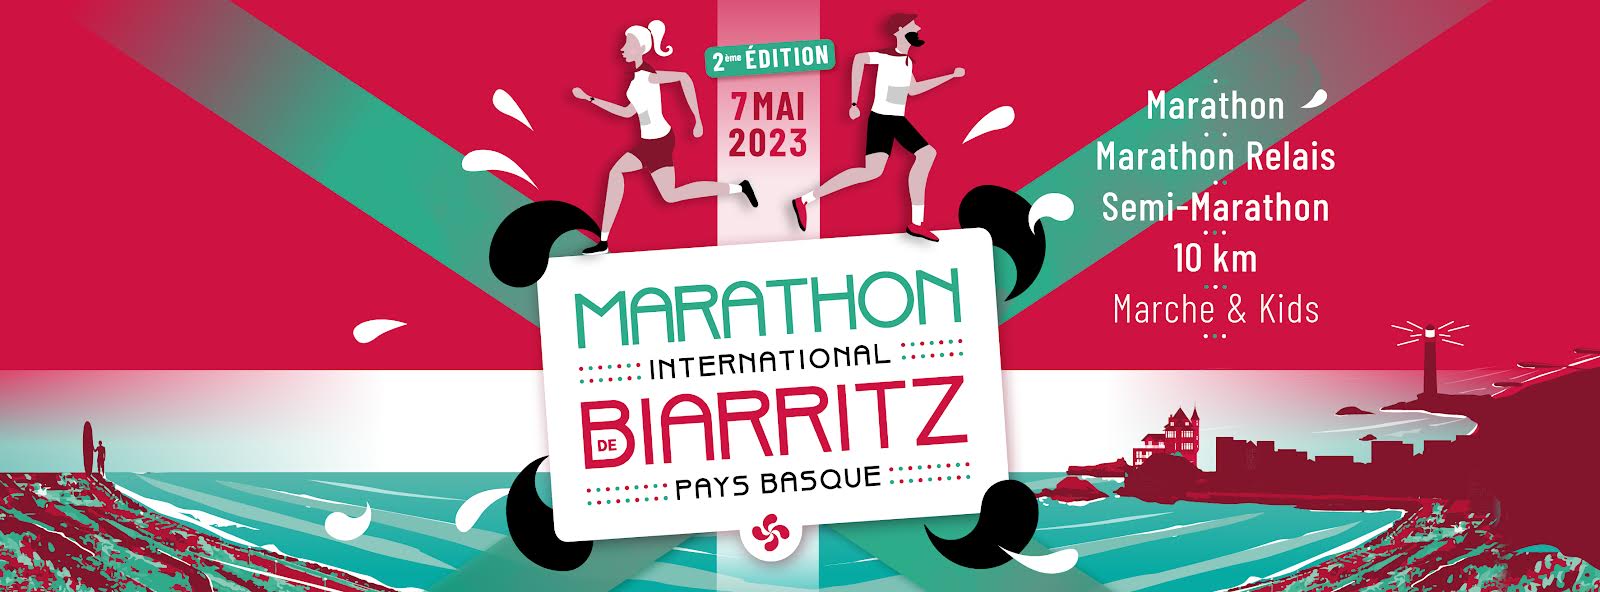 affiche_du_marathon_de_biarritz_-_pays_basque_2023